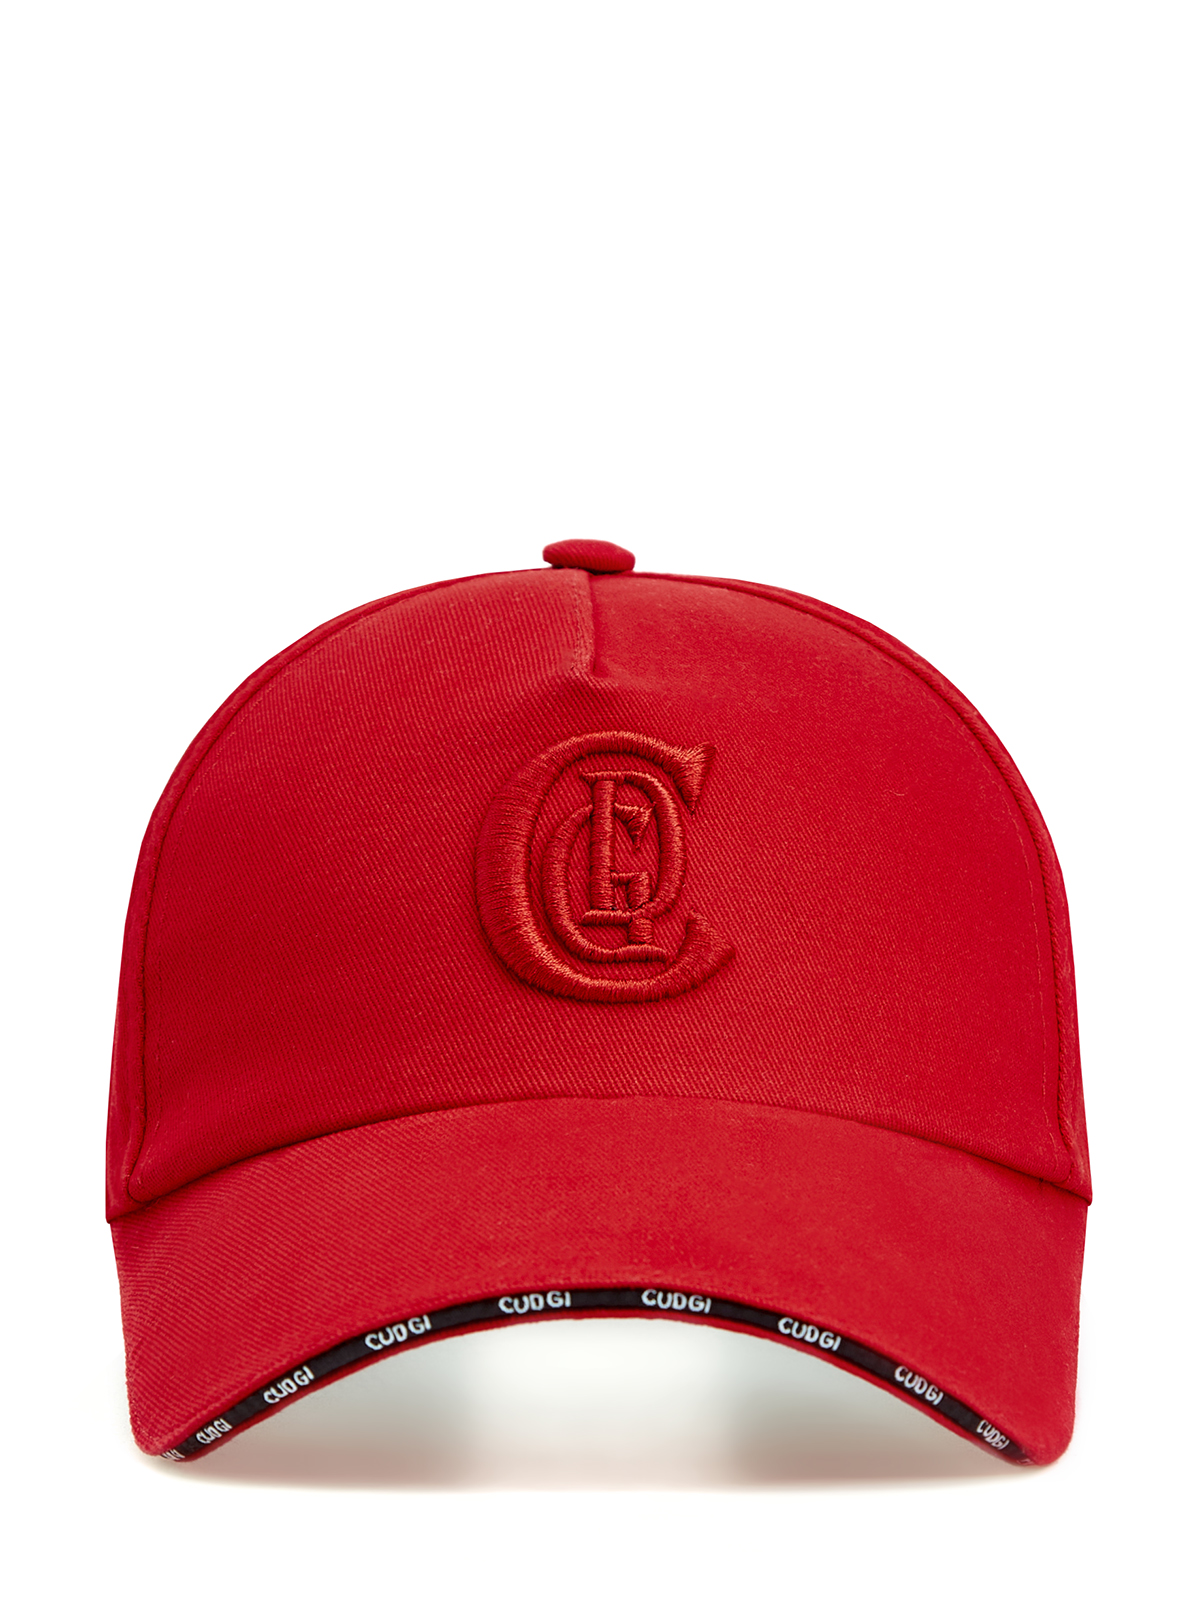 Бейсболка из хлопкового габардина с объемным вышитым логотипом CUDGI, цвет красный, размер 58;59 - фото 1